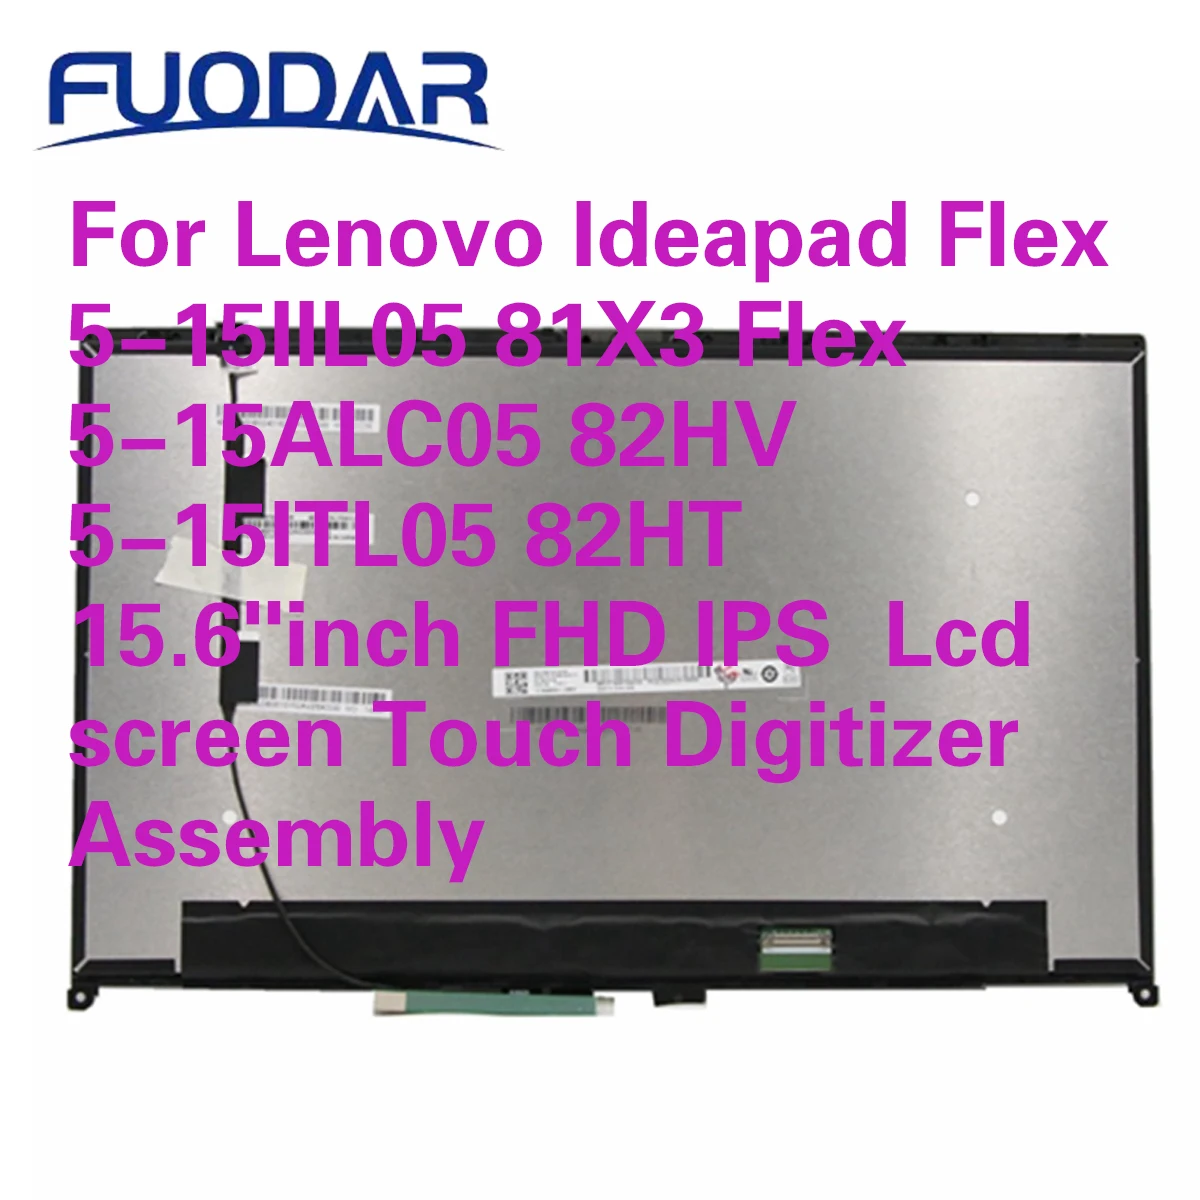 

Для Lenovo Ideapad Flex 5-15IIL05 81X3 Flex 5-15ALC05 82HV 5-15ITL05 82HT 15,6 дюймов FHD IPS ЖК-экран с сенсорным дигитайзером в сборе